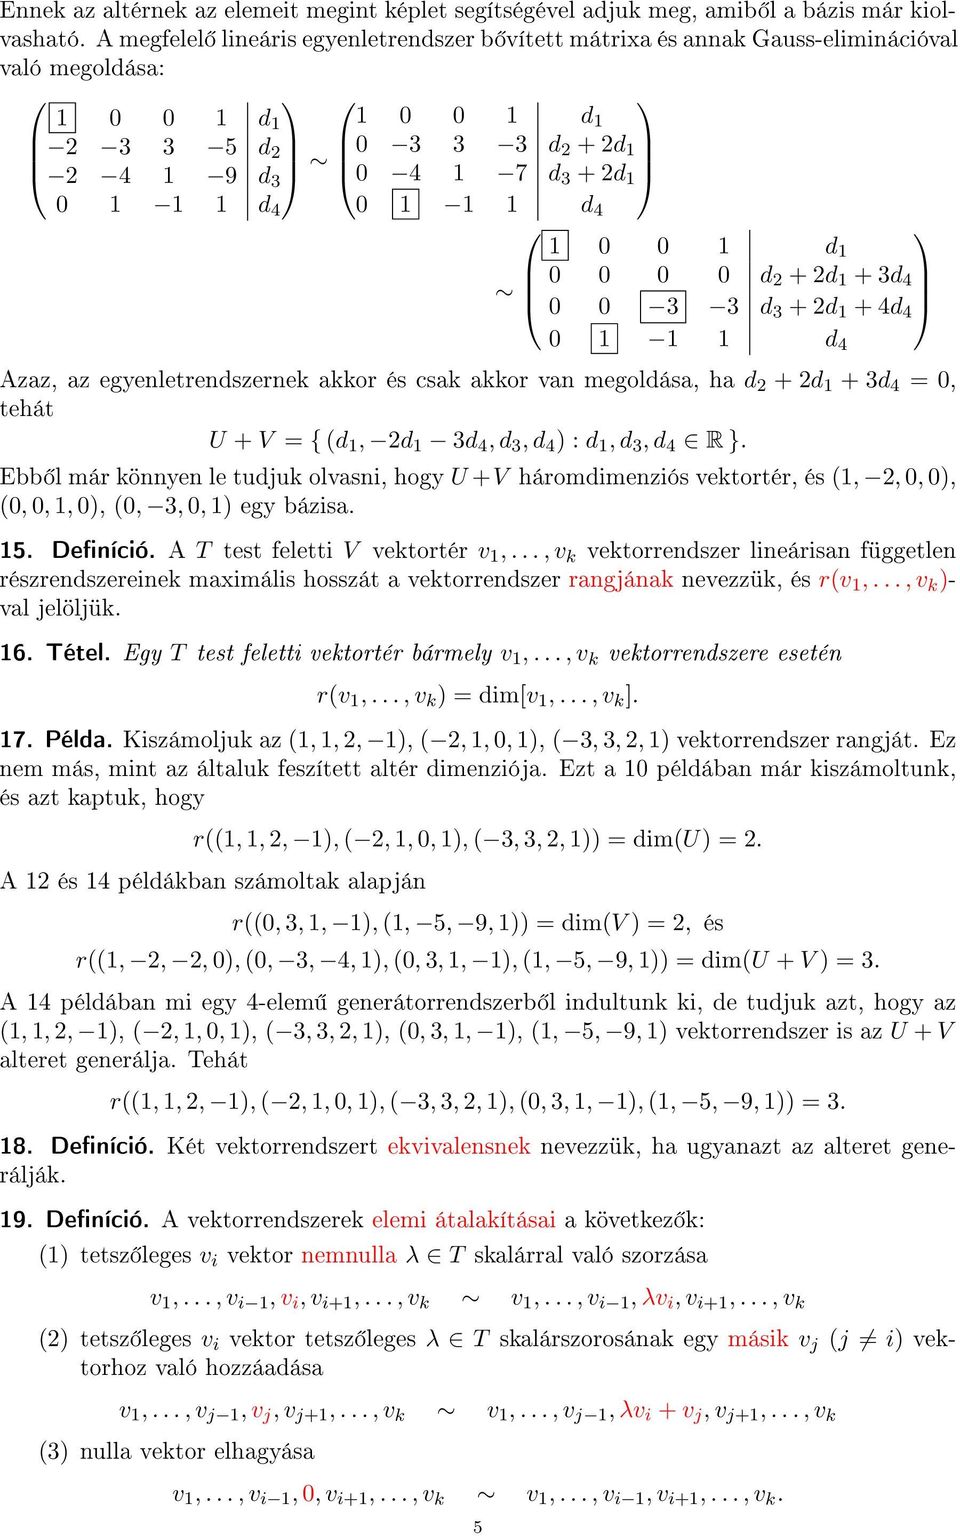 1 1 1 d 4 1 0 0 1 d 1 0 0 0 0 d 2 + 2d 1 + 3d 4 0 0 3 3 d 3 + 2d 1 + 4d 4 0 1 1 1 d 4 Azaz, az egyenletrendszernek akkor és csak akkor van megoldása, ha d 2 + 2d 1 + 3d 4 = 0, tehát U + V = { (d 1,